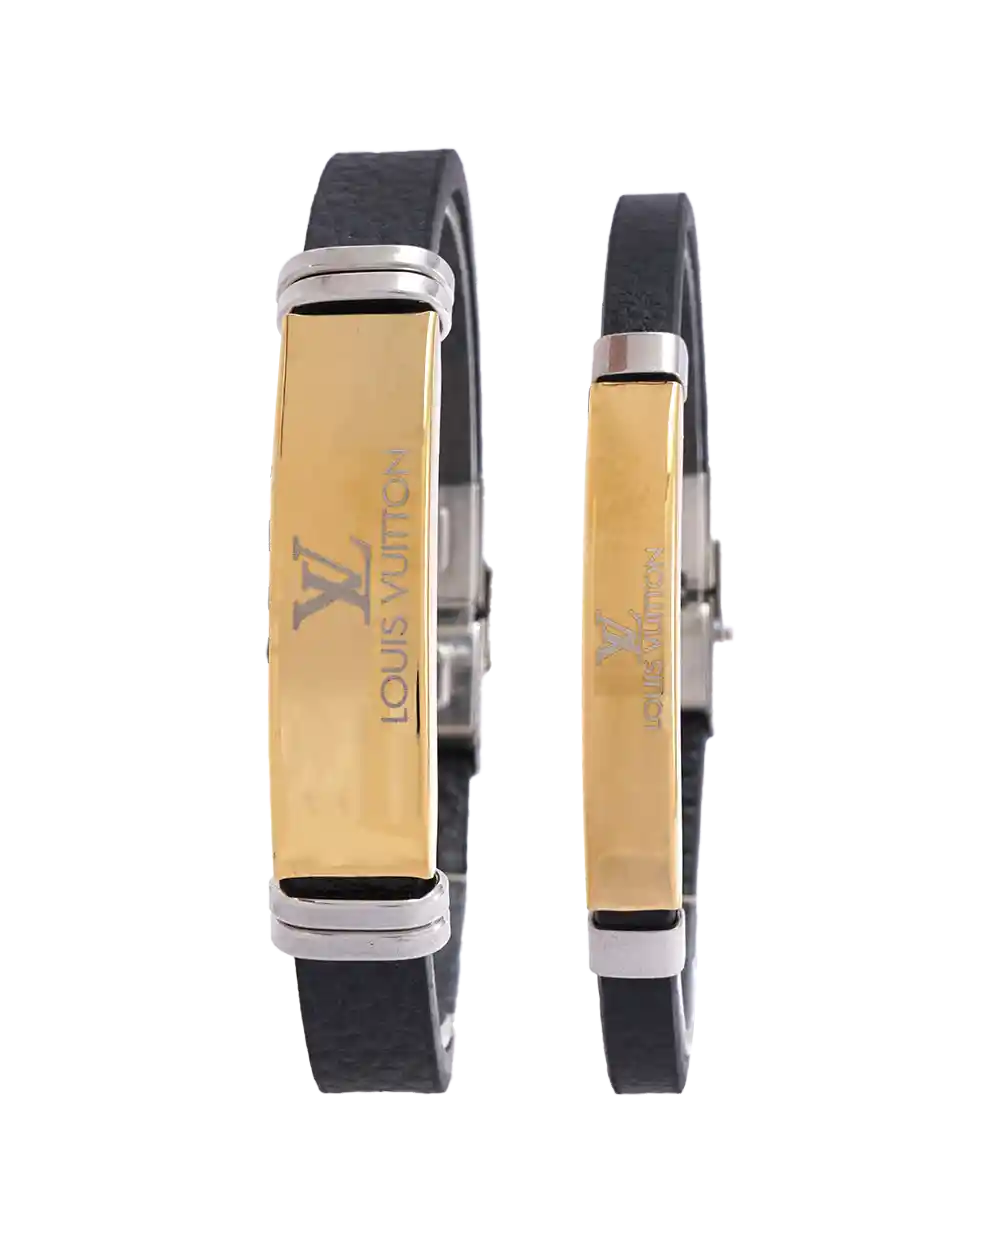 خرید ست دستبند چرمی طرح لویی ویتون مدل 1611 با بهترین قیمت به همراه ارسال رایگان و جعبه ی کادویی | ست دستبند چرمی louis vuitton